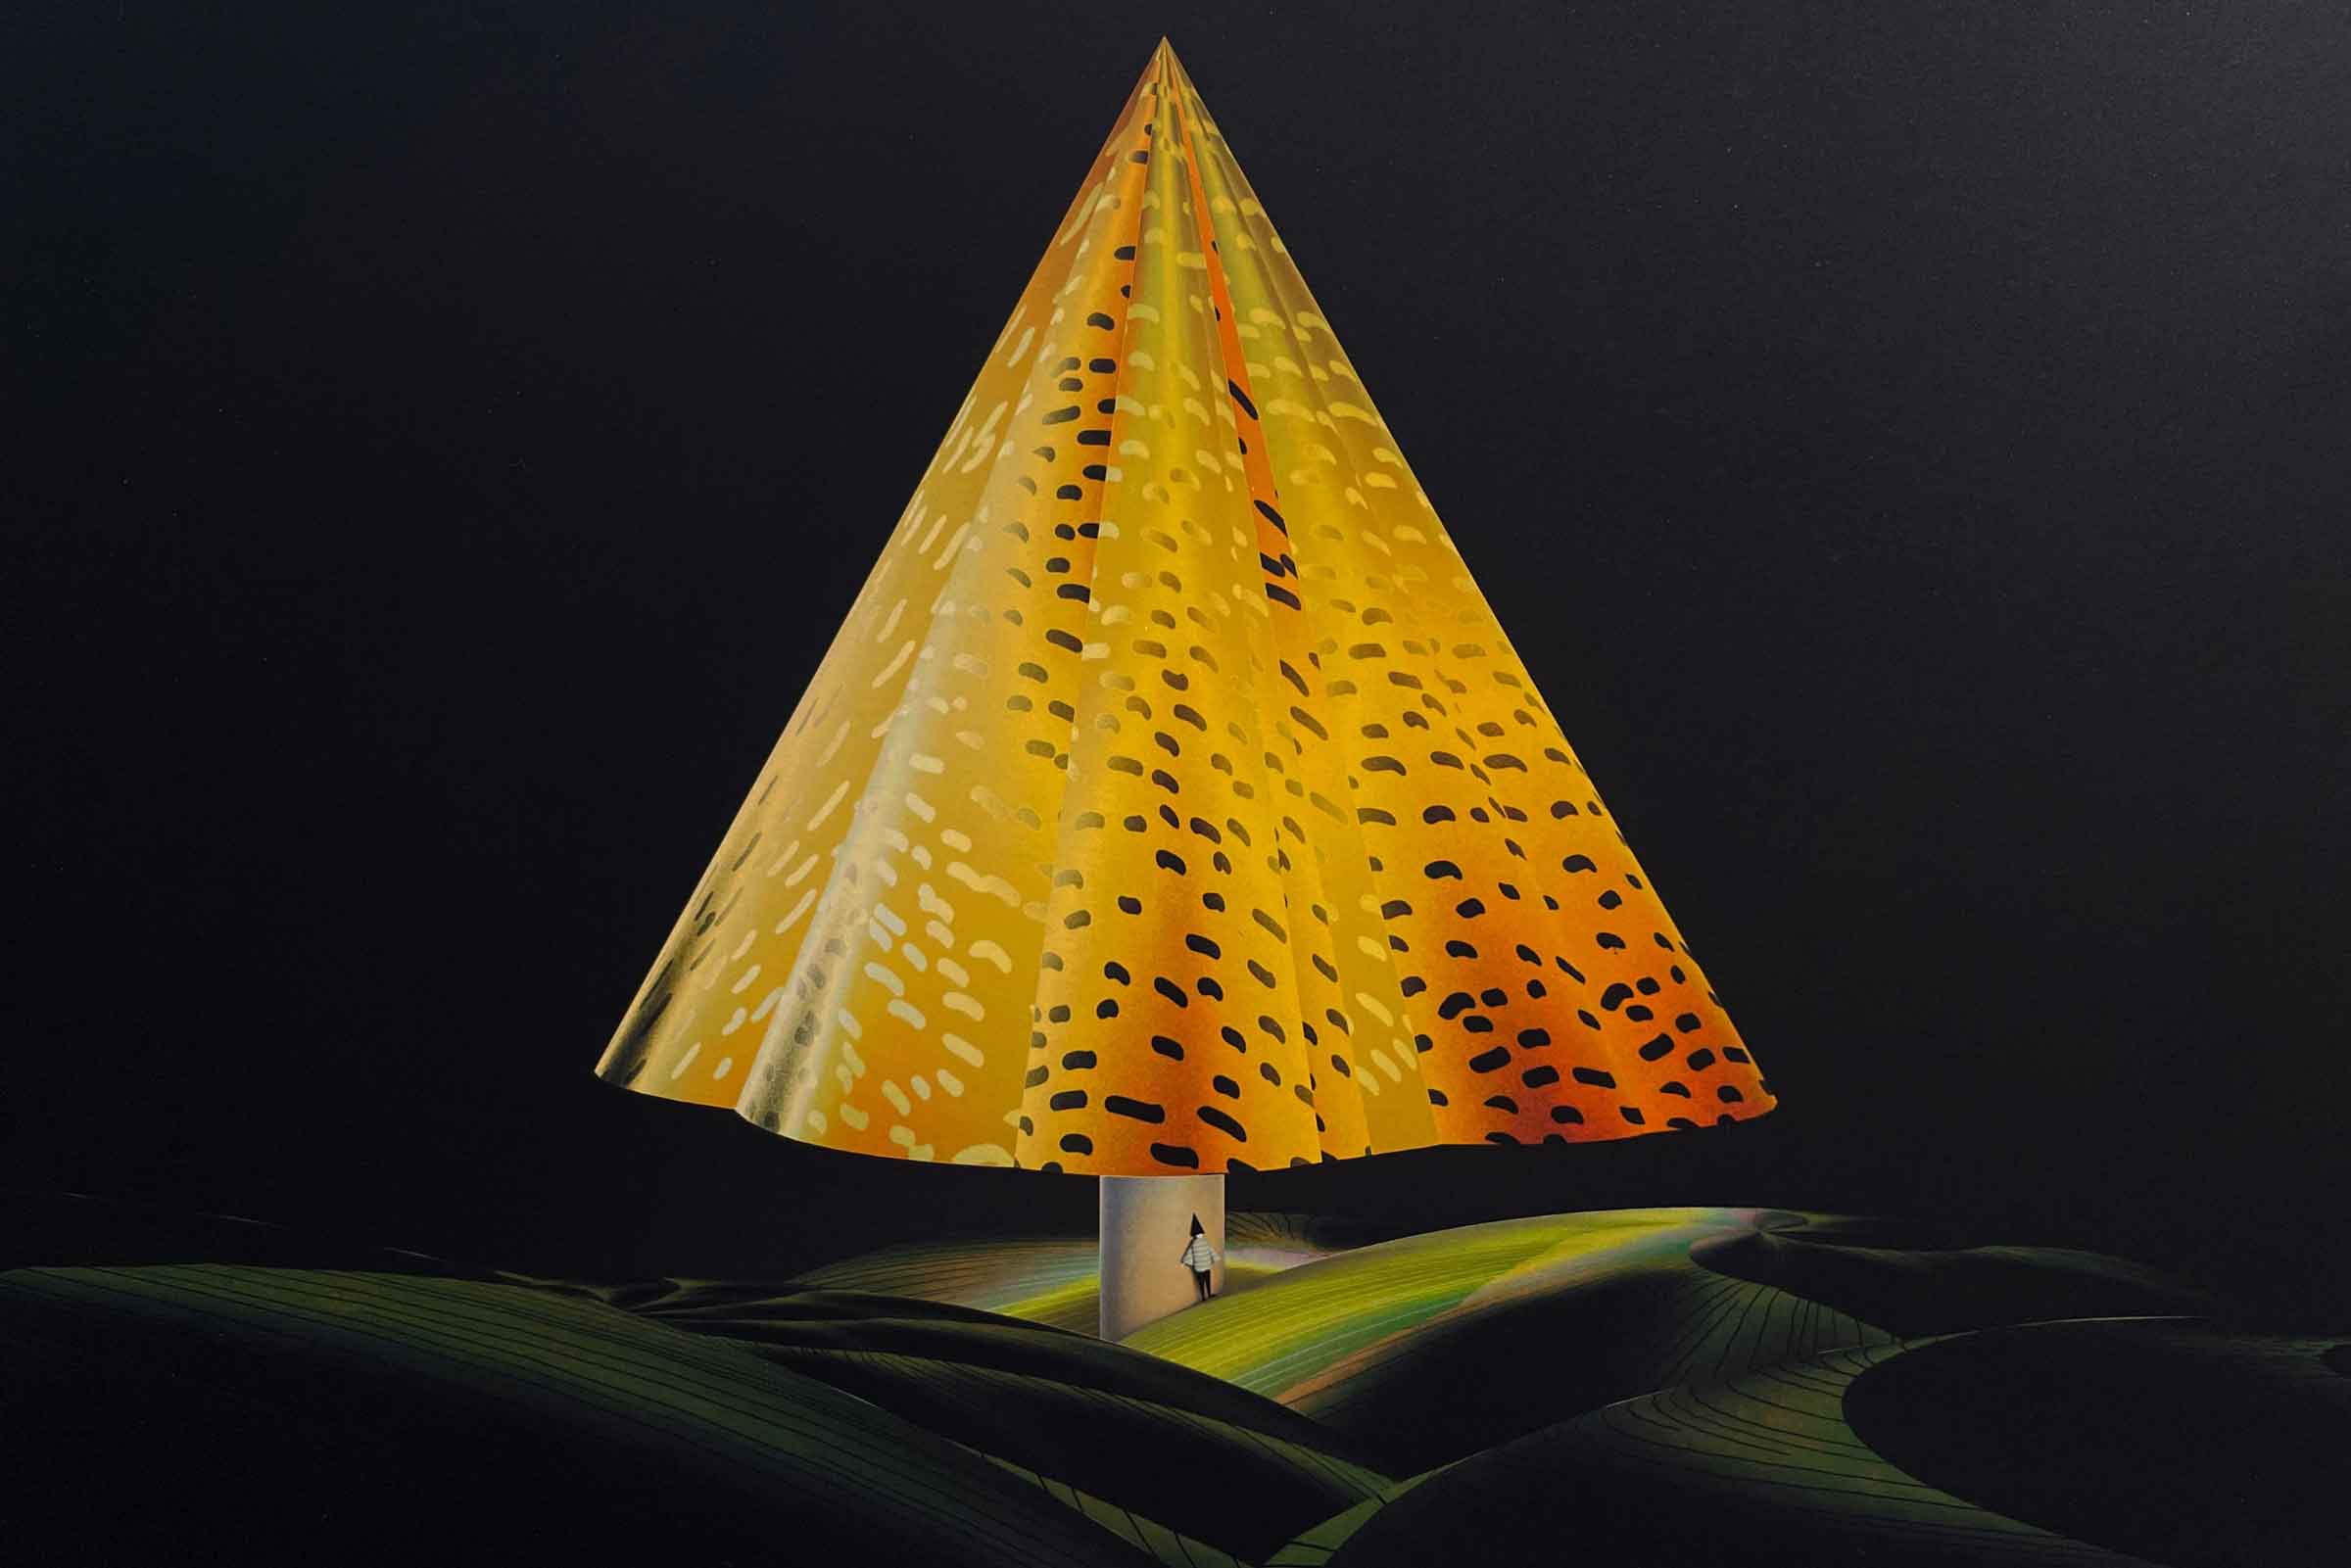 美術家・Atsushigraphの木製パネルジークレープリント「Lamp」絵柄部分